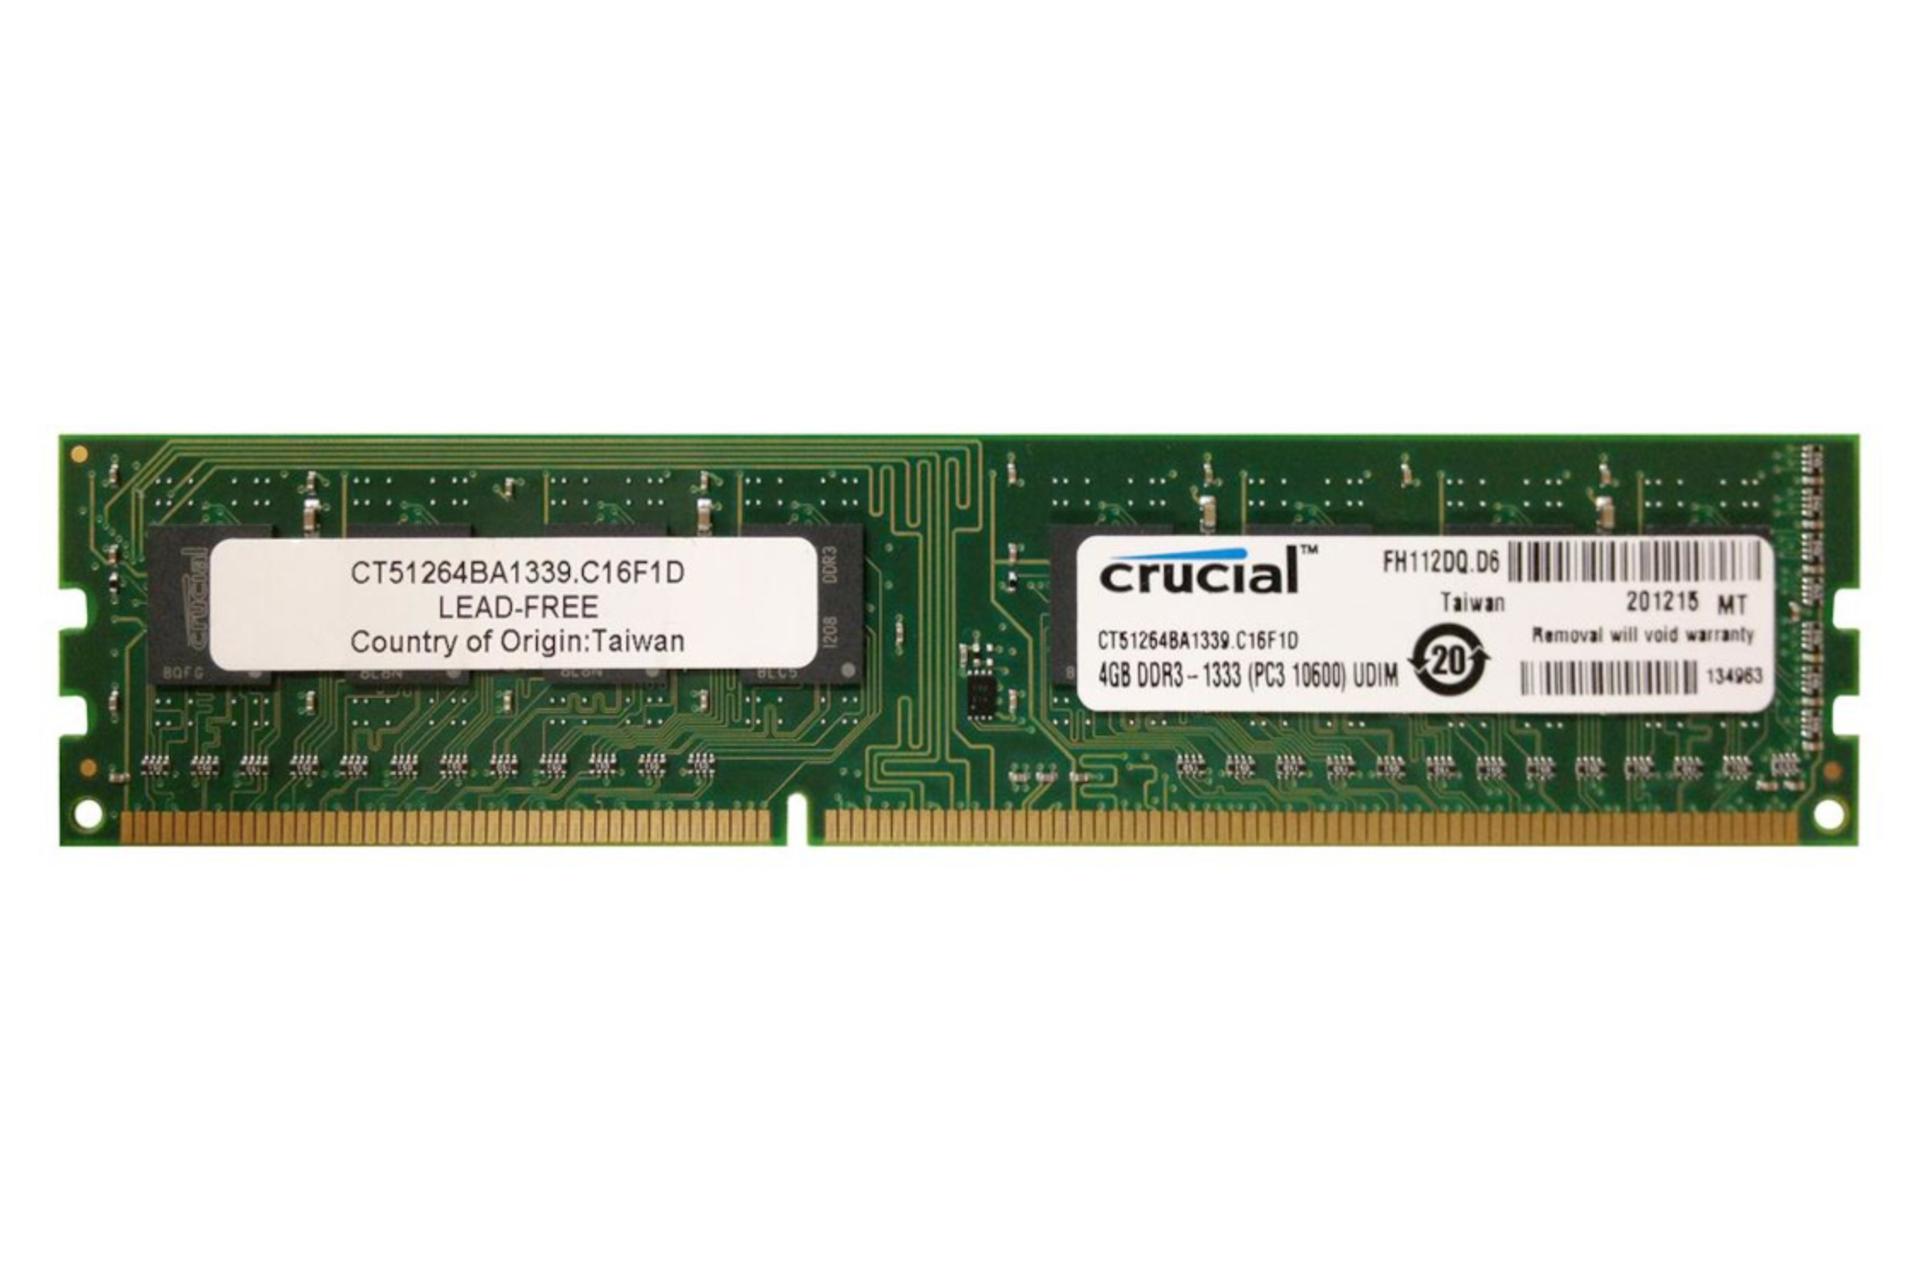 رم کروشیال Crucial CT51264BA1339 ظرفیت 4 گیگابایت از نوع DDR3-1333